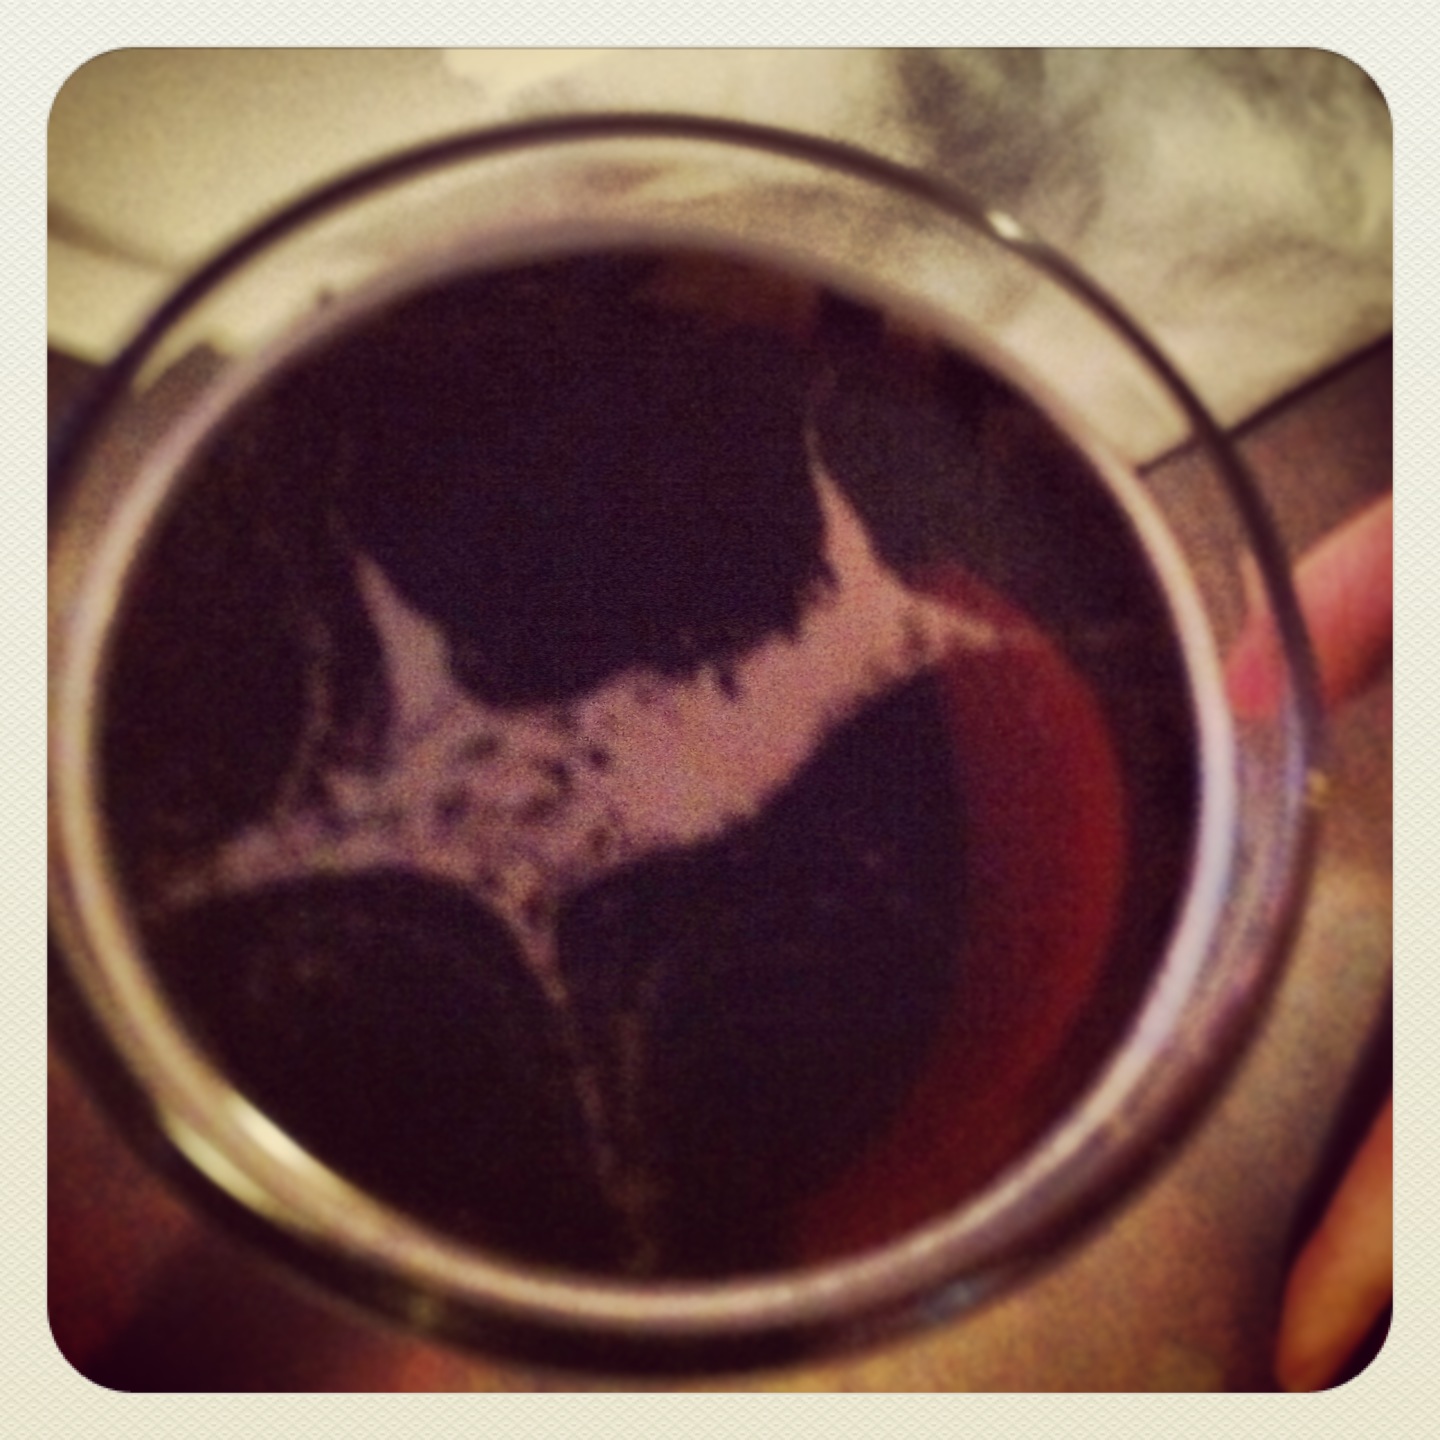 Shark in my beer!